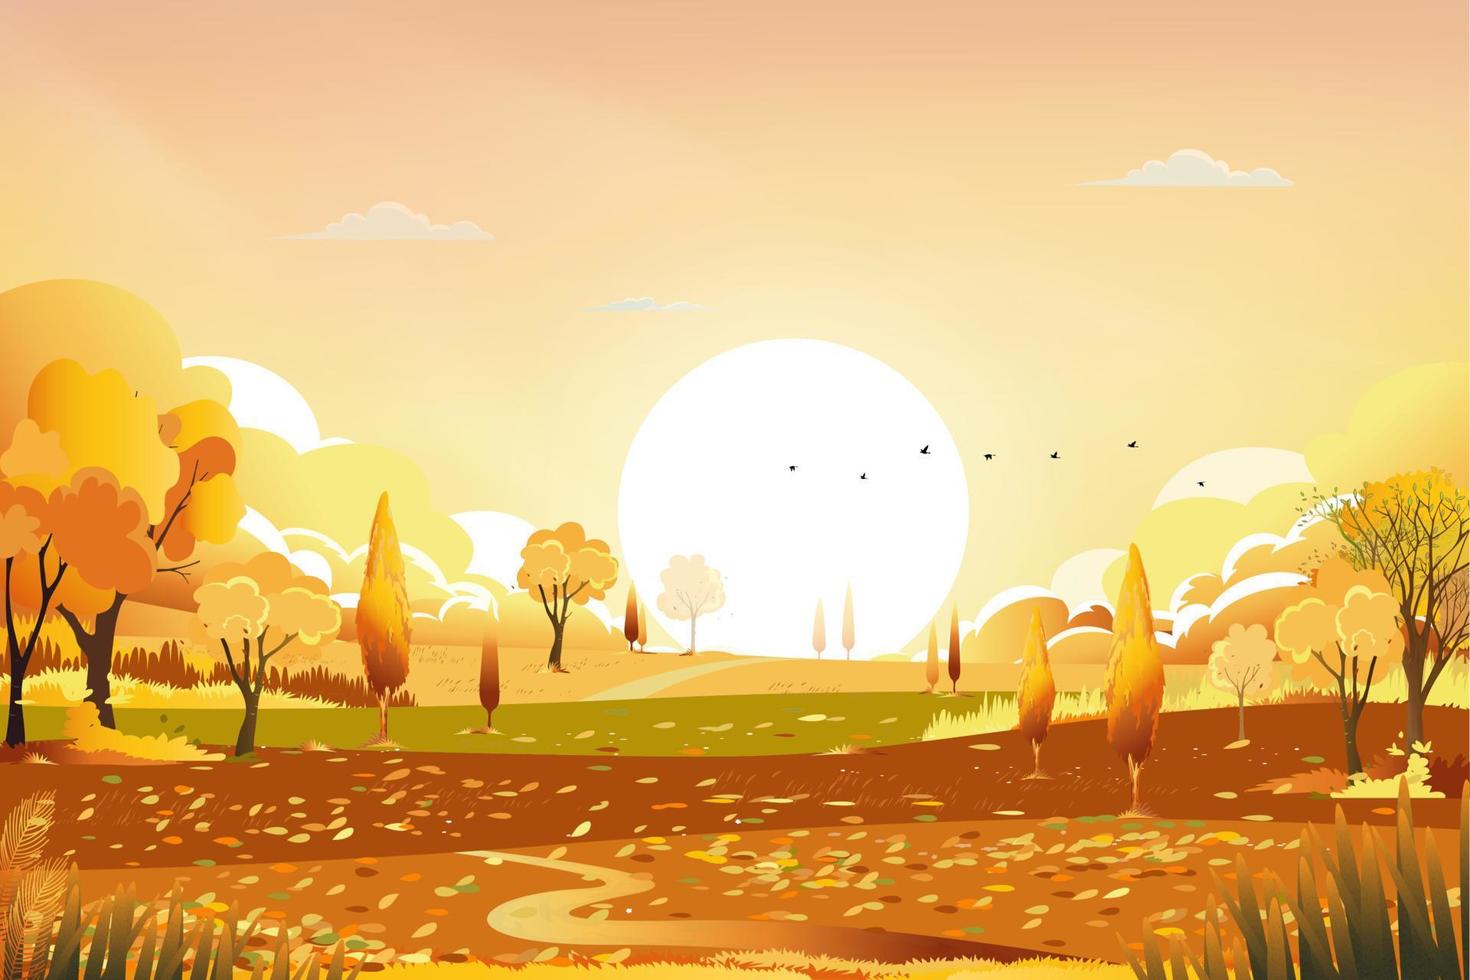 paisagem rural de outono na luz da noite com fundo do céu pôr do sol, azul e laranja, temporada de outono dos desenhos animados vetor na zona rural com árvore da floresta e campo de grama com nascer do sol, banner natural de pano de fundo